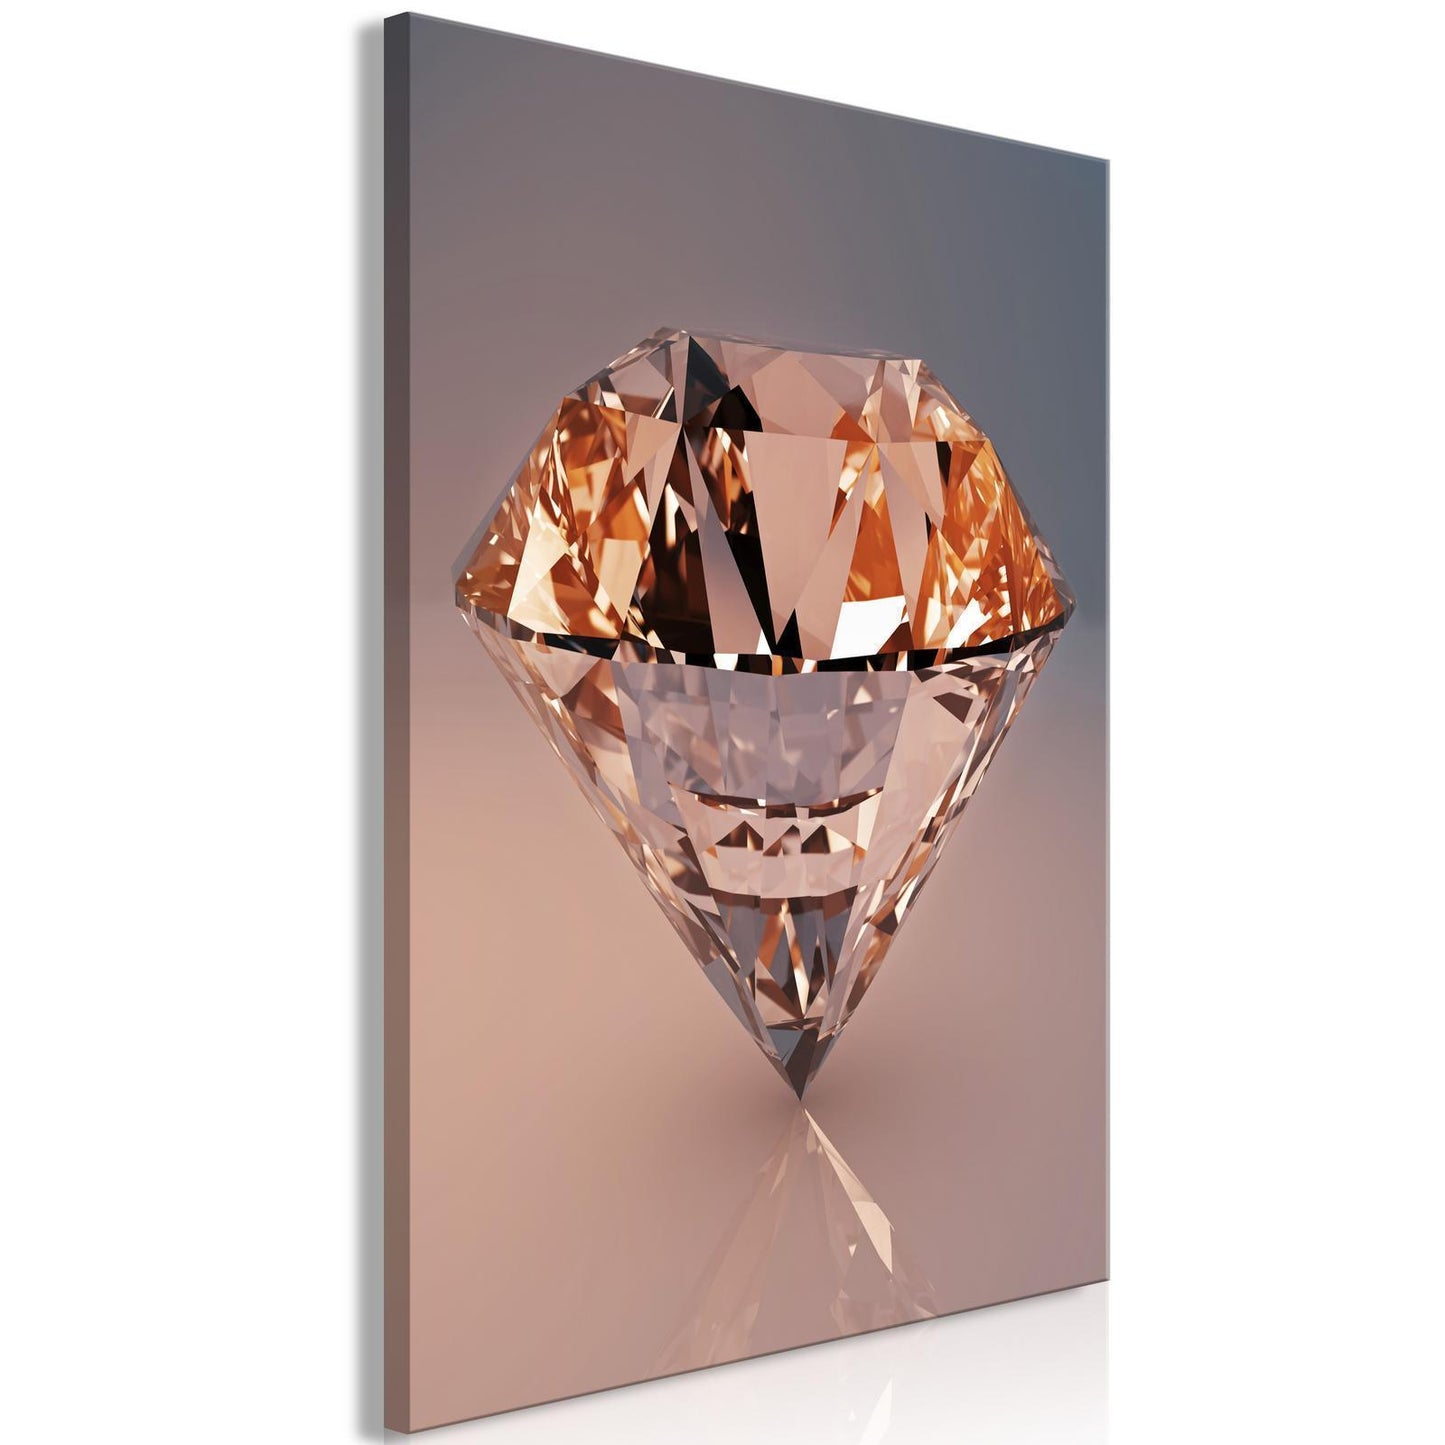 Schilderij - Costly Diamond (1 Part) Vertical